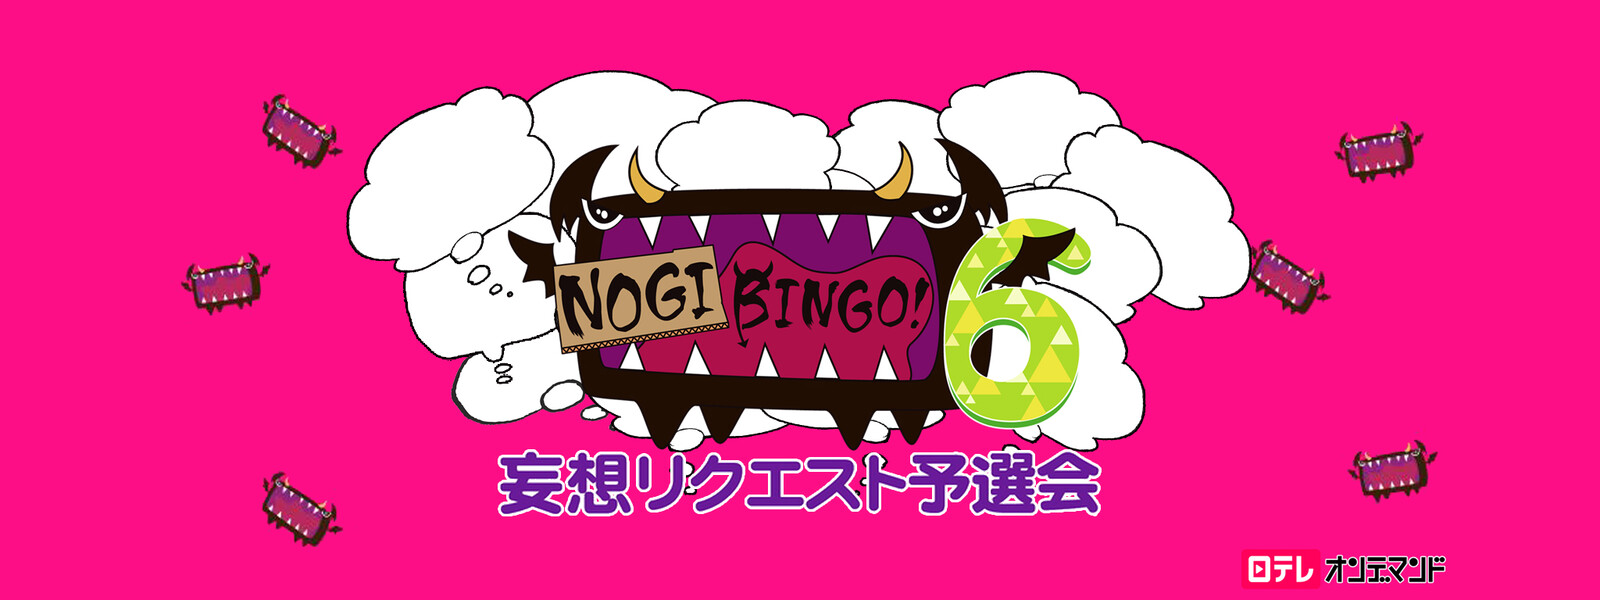 NOGIBINGO! 6 妄想リクエスト予選会の動画 - NOGIBINGO! 1